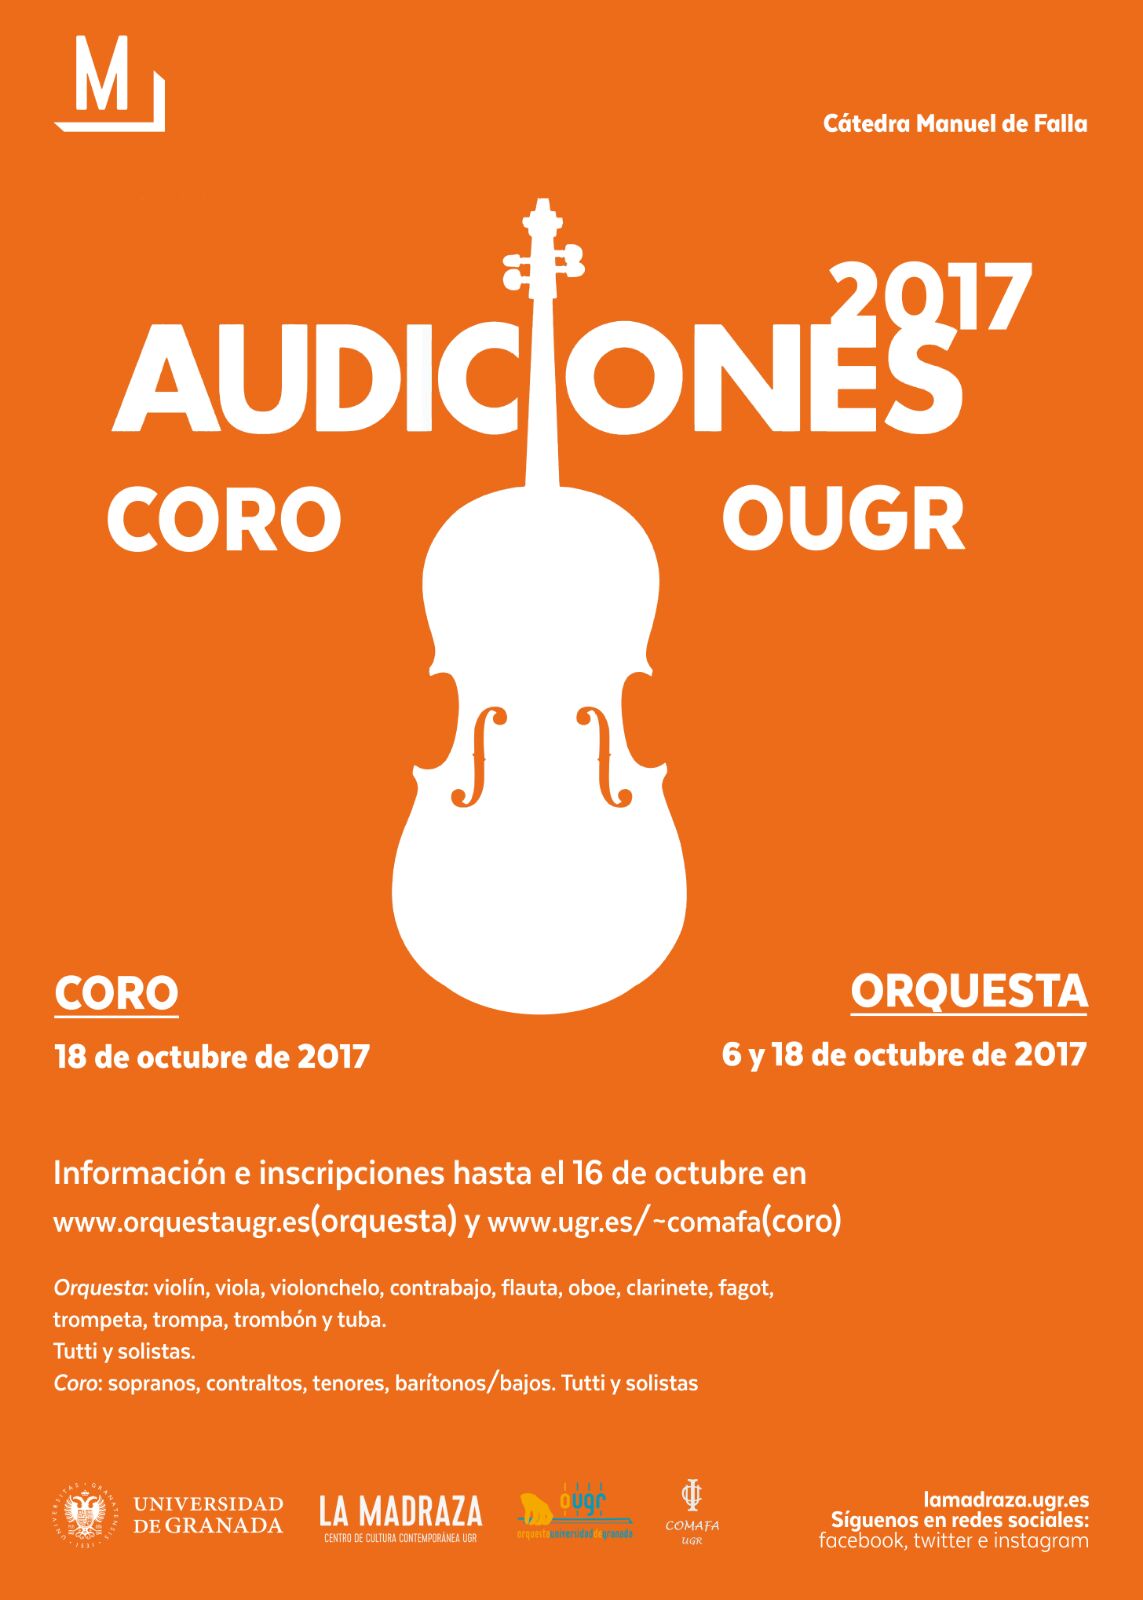 Convocatoria de audiciones para el Coro de la Universidad de Granada dirigido por Jorge Rodriguez Morata, Curso 2017/2018. 